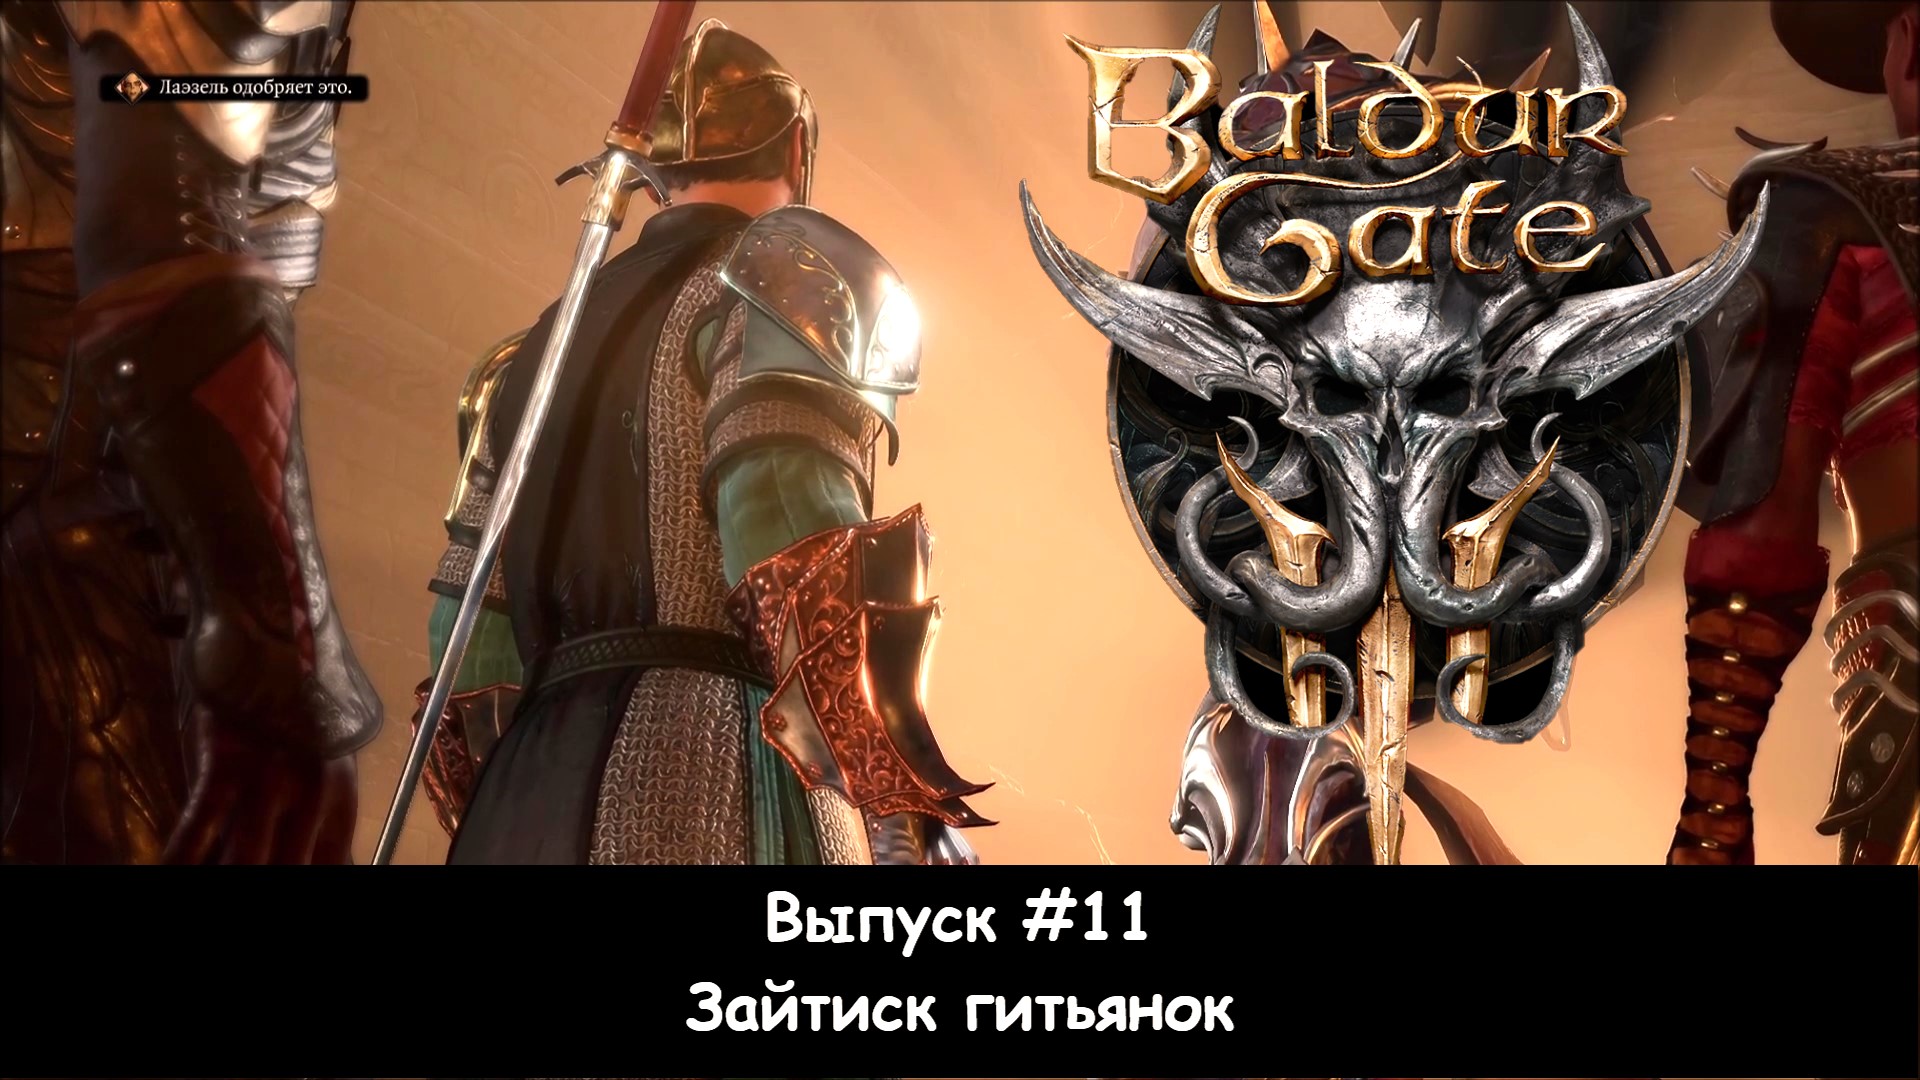 Прохождение Baldur's Gate 3: Выпуск #11 - Зайтиск гитьянок